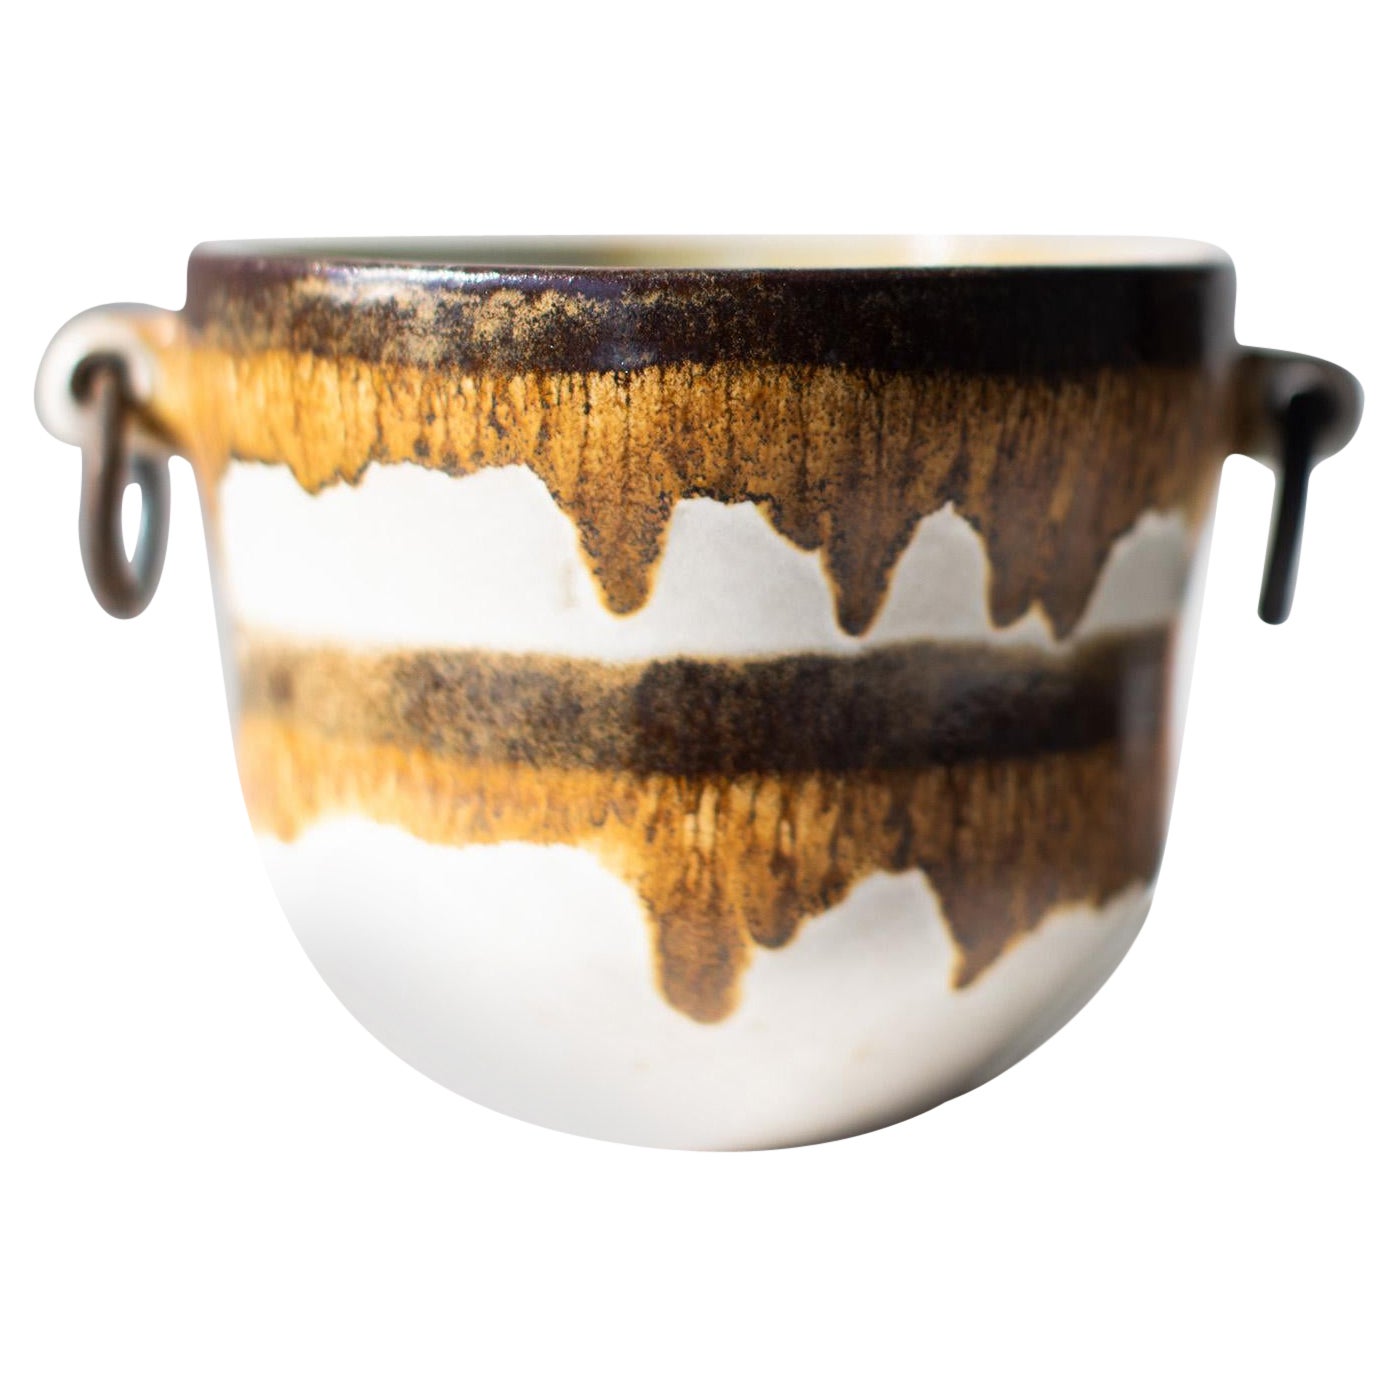 Alvino Bagni Bowl or Vase for Raymor